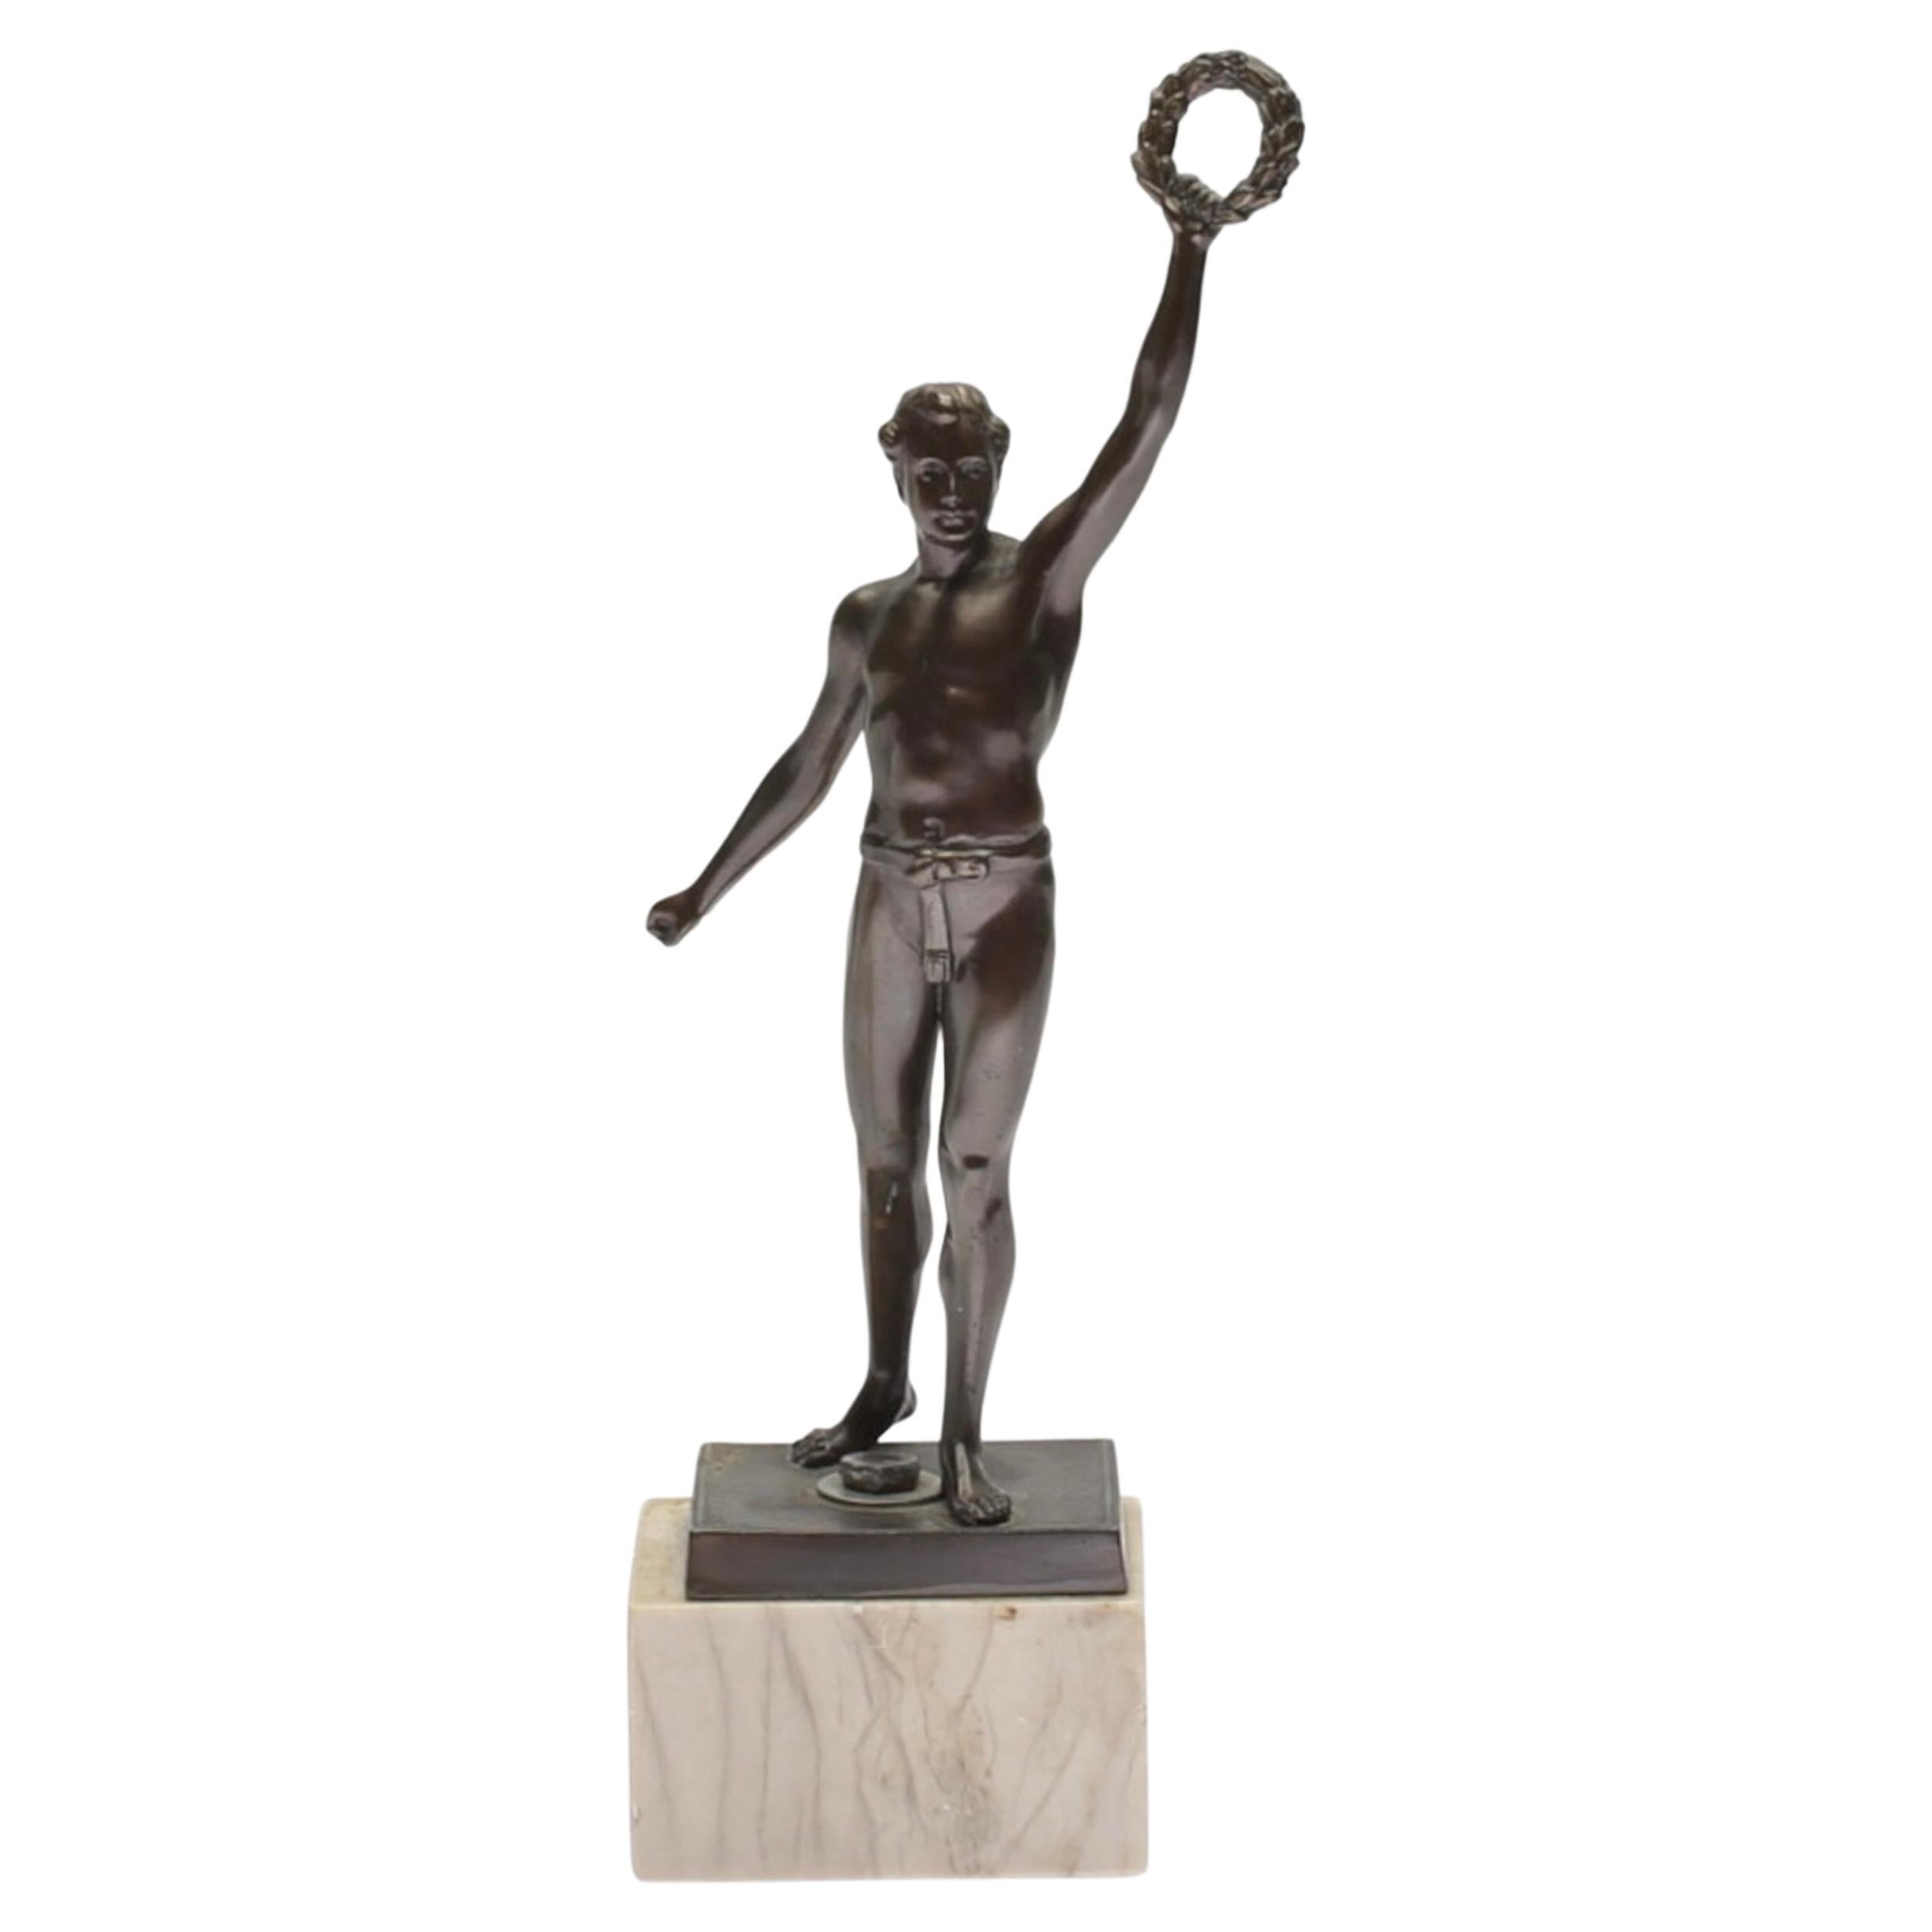 Patinierte Metallskulpturfigur eines Athleten aus dem 20. Jahrhundert